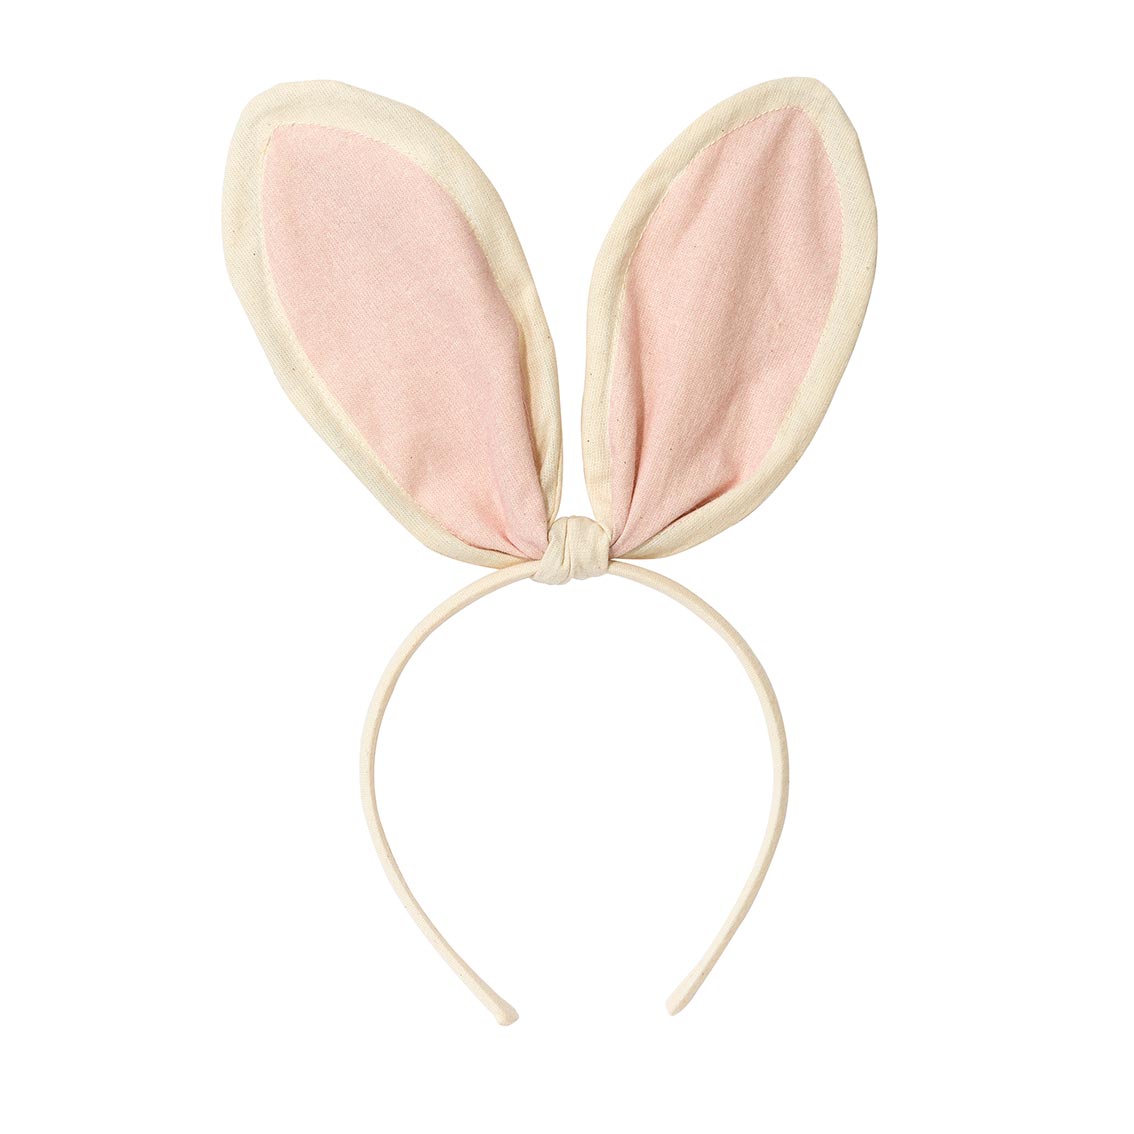 Bunny Dress Up Bunny Ears